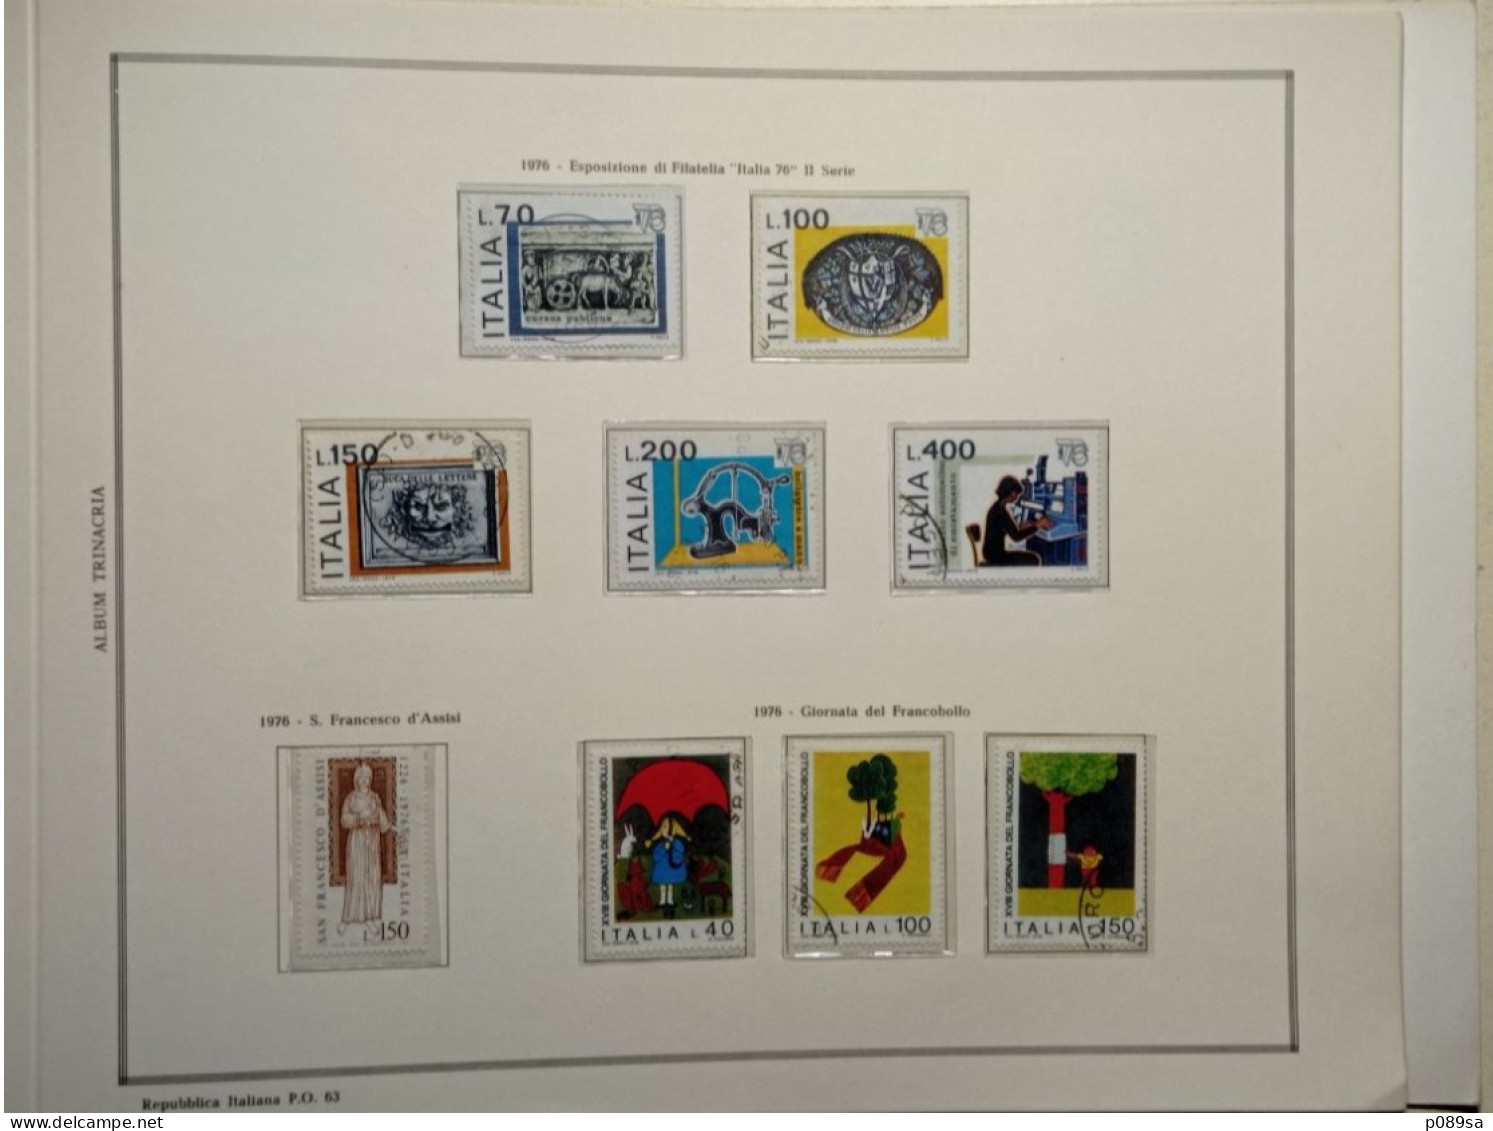 Collezione di francobolli usati della Repubblica Italiana